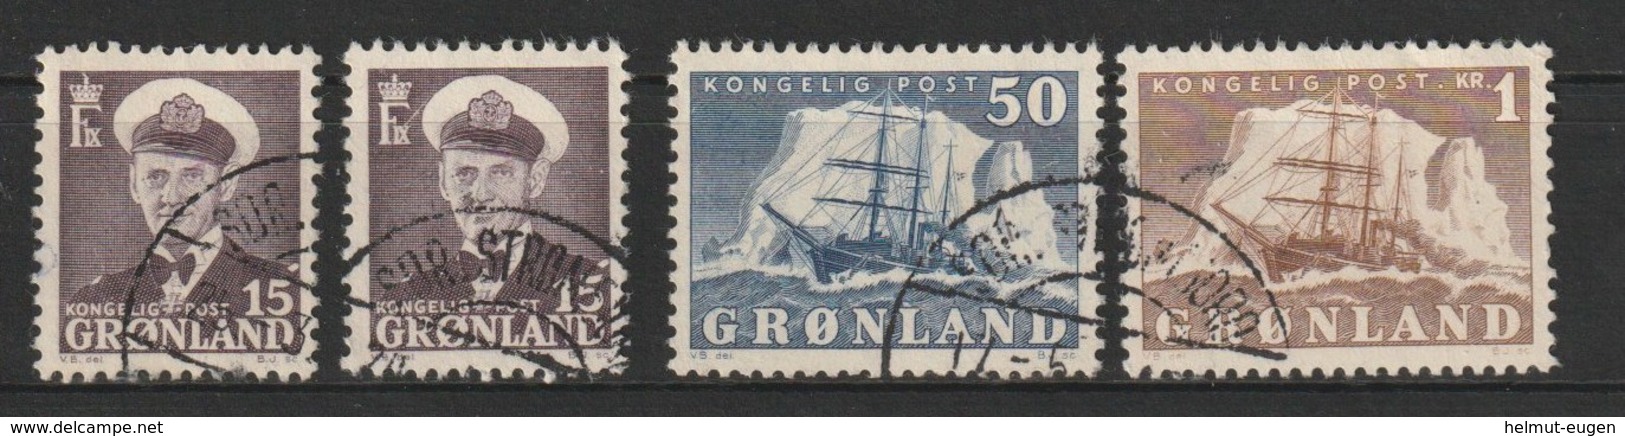 MiNr. 31. 31, 34, 35 Dänemark Grönland       1950, 15. Aug./1960. Freimarken: König Frederik IX. Und Arktisschiff. - Used Stamps